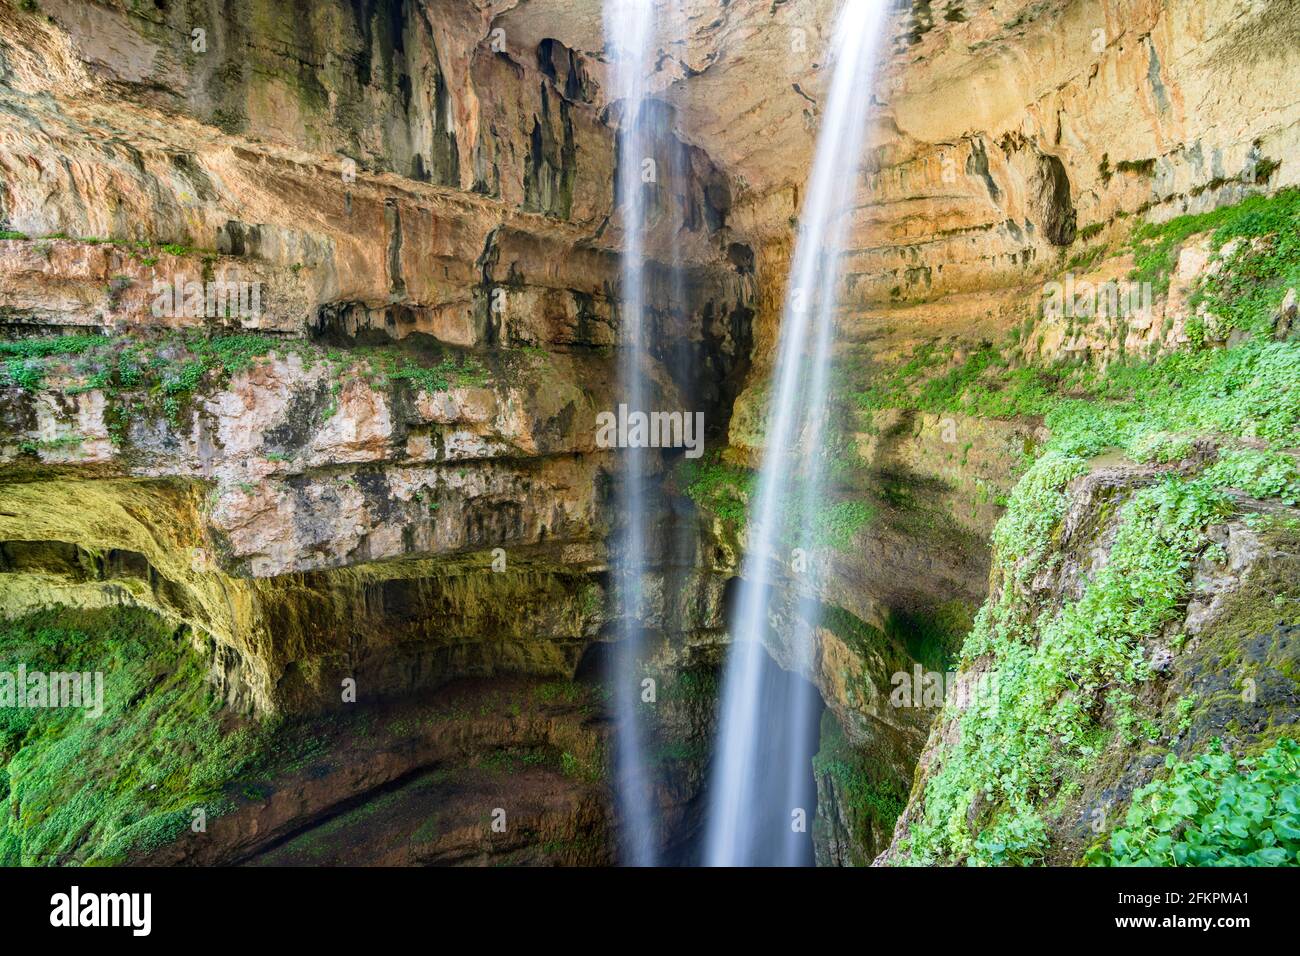 Baatara gorge waterfall with two streams, Tannourine, Lebanon Stock Photo